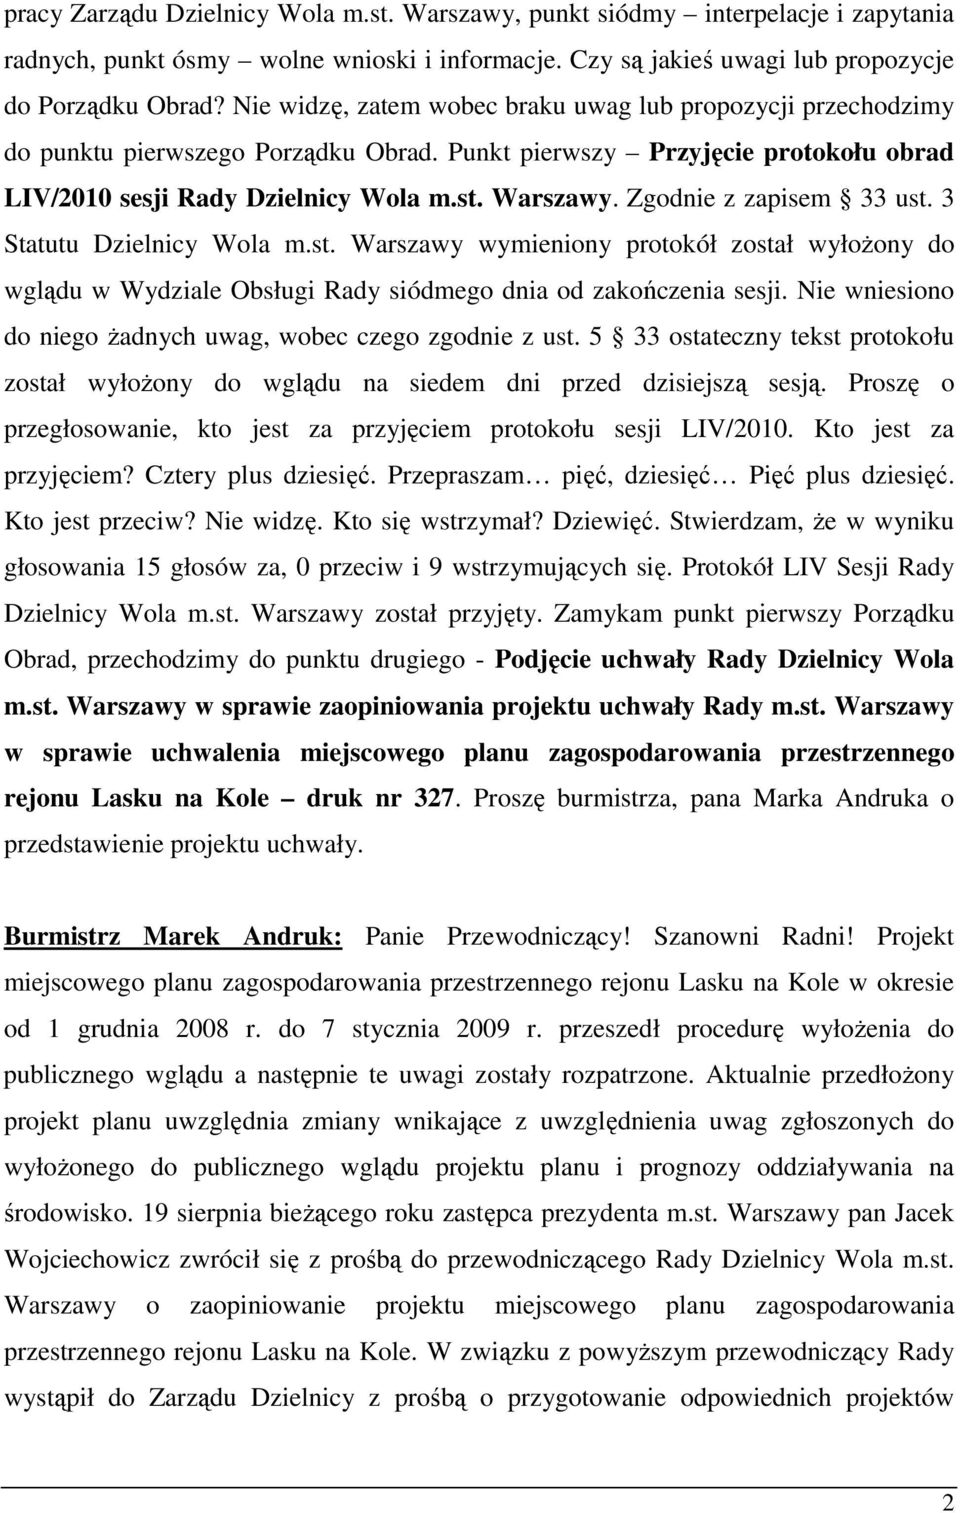 Zgodnie z zapisem 33 ust. 3 Statutu Dzielnicy Wola m.st. Warszawy wymieniony protokół został wyłoŝony do wglądu w Wydziale Obsługi Rady siódmego dnia od zakończenia sesji.